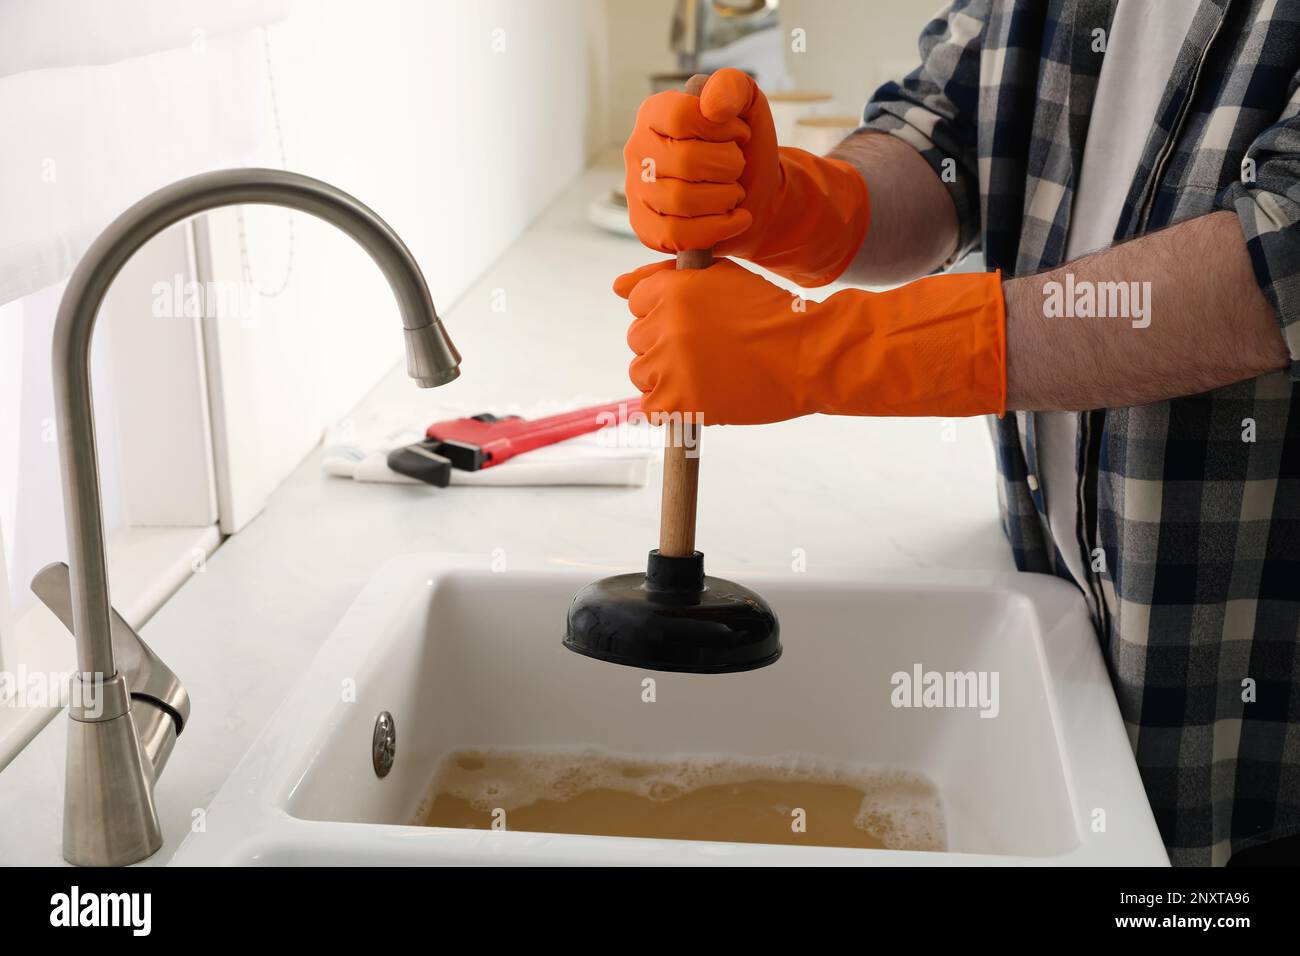 https://c8.alamy.com/comp/2NXTA96/man-using-plunger-to-unclog-sink-drain-in-kitchen-closeup-2NXTA96.jpg